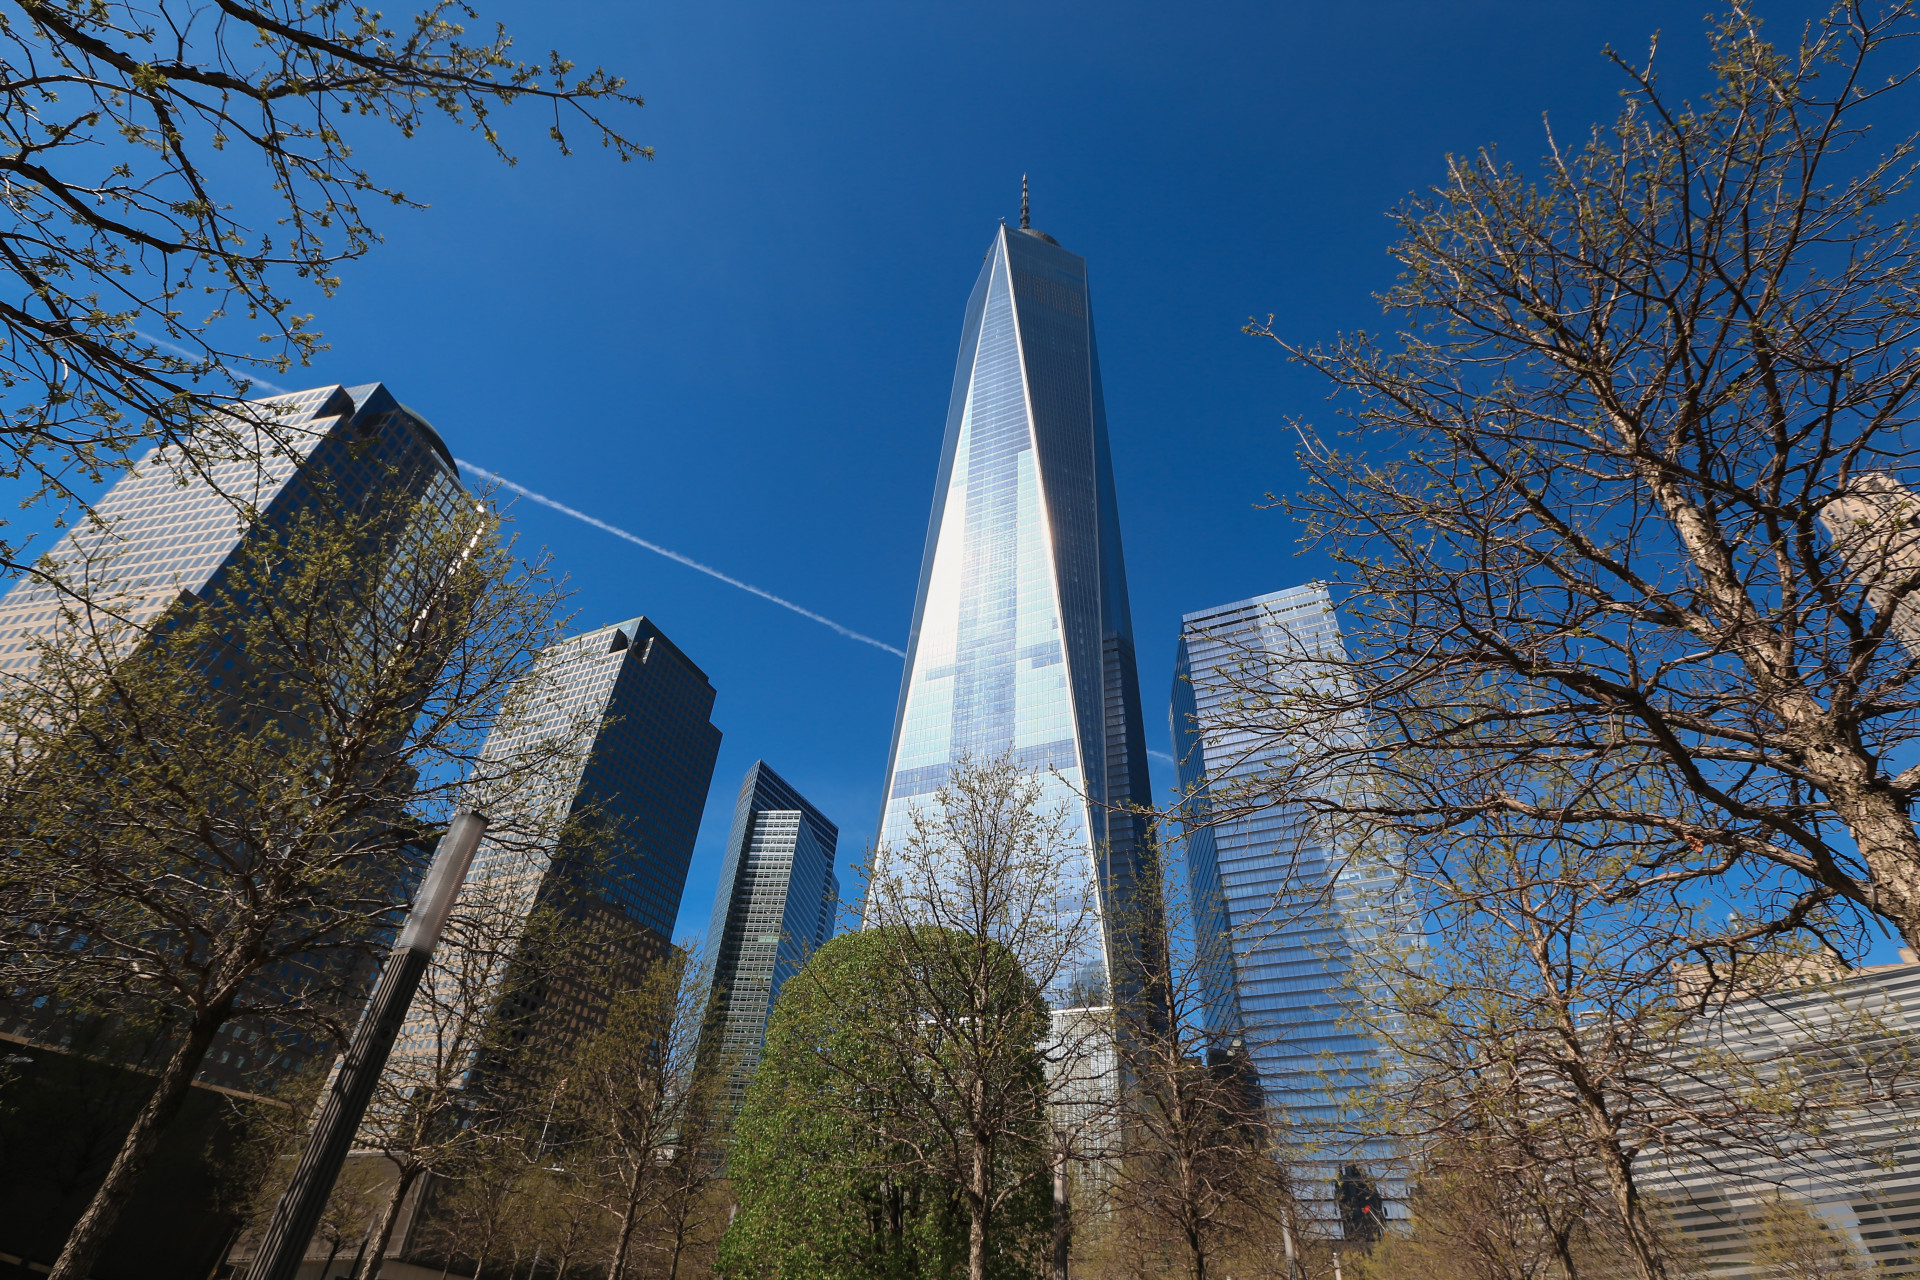 Aussi connu sous le nom de WTC1 et situé dans la Big Apple, c'est le bâtiment principal du nouveau World Trade Center. Il a ouvert en 2014 et mesure 541 mètres.<p>Tu pourrais aussi aimer:<a href="https://www.starsinsider.com/n/422930?utm_source=msn.com&utm_medium=display&utm_campaign=referral_description&utm_content=164050v2"> Michael Jordan et le légendaire maillot #23 </a></p>